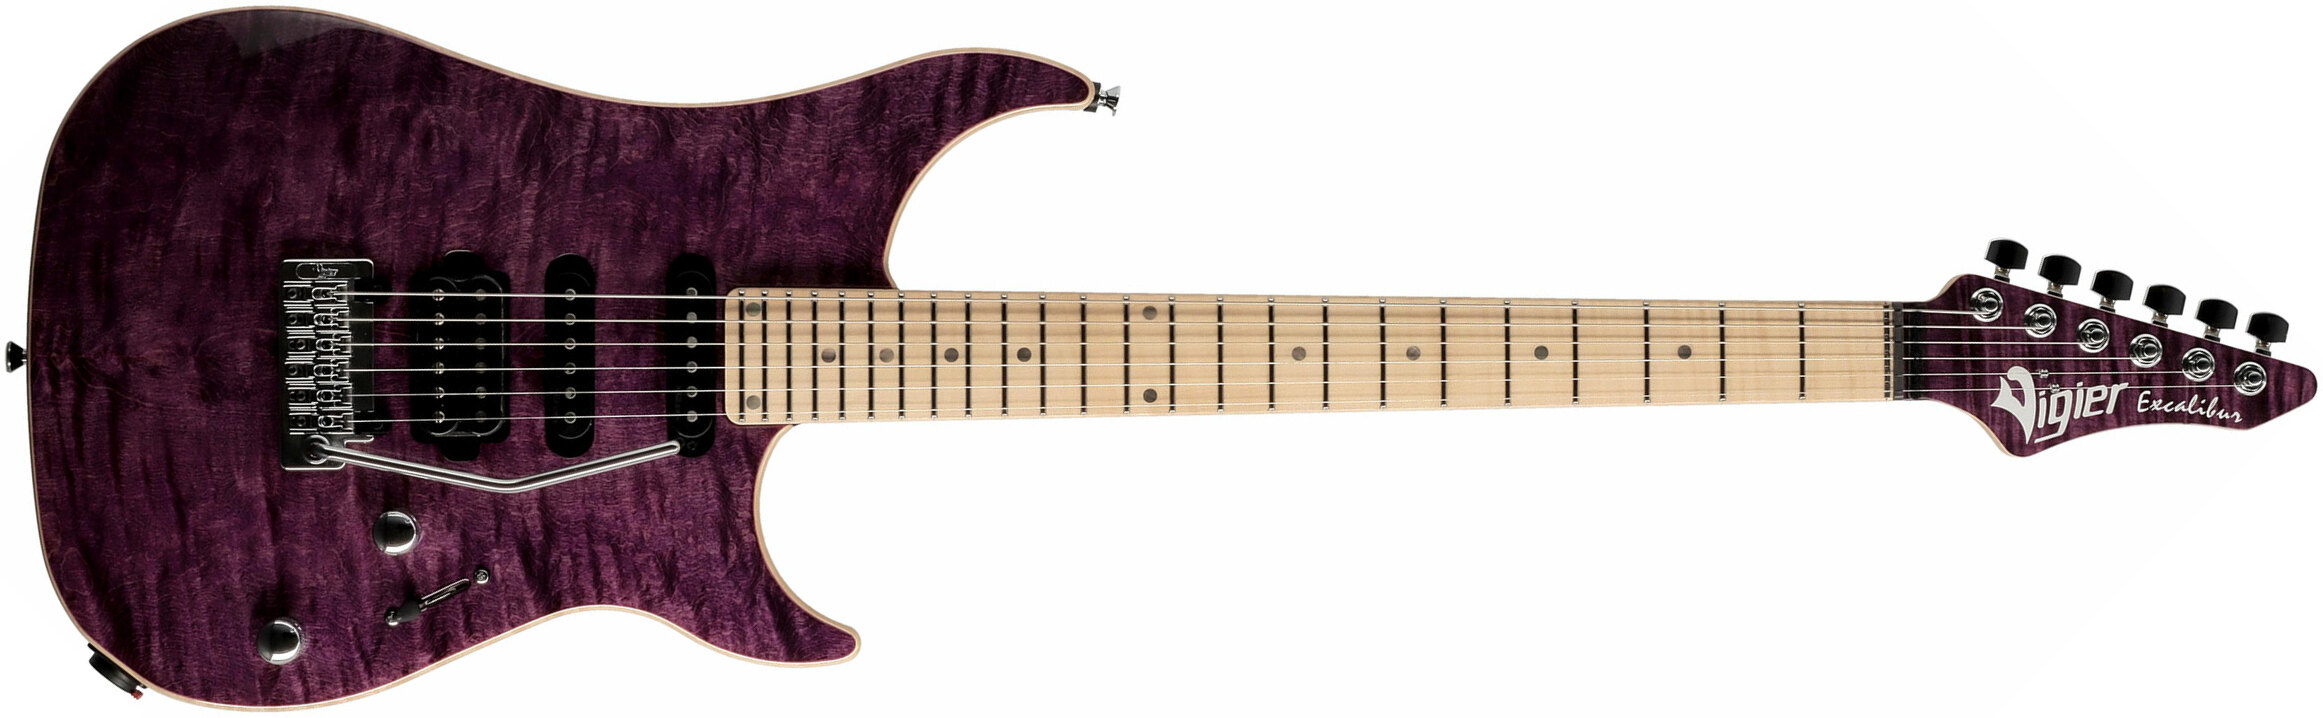 Vigier Excalibur Ultra Blues Hss Trem Mn - Amethyst Purple - Guitarra eléctrica con forma de str. - Main picture